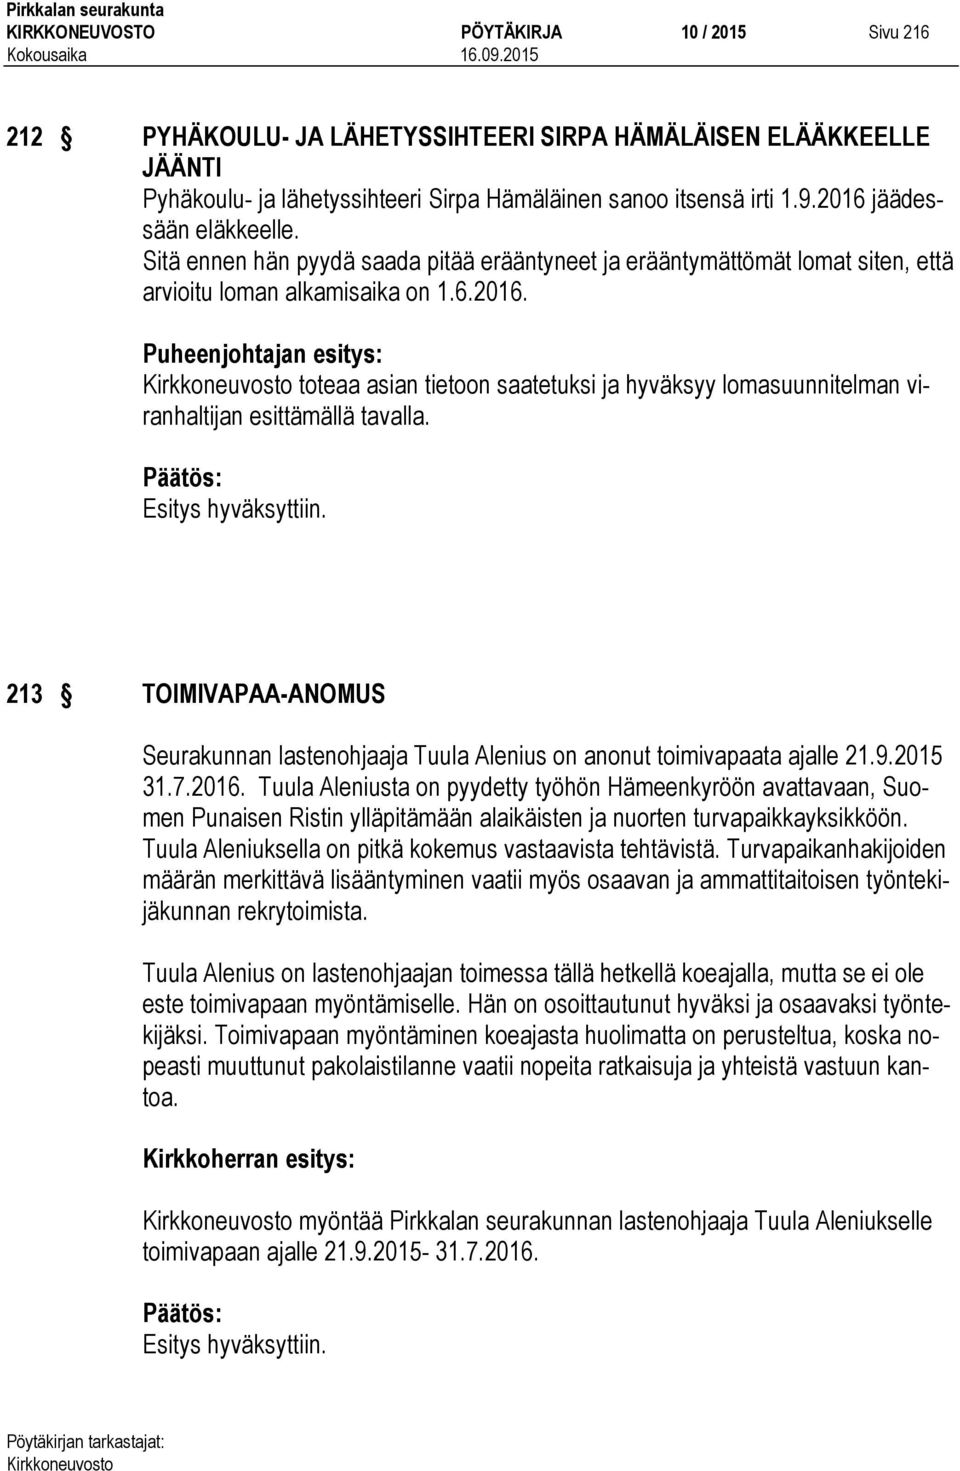 213 TOIMIVAPAA-ANOMUS Seurakunnan lastenohjaaja Tuula Alenius on anonut toimivapaata ajalle 21.9.2015 31.7.2016.